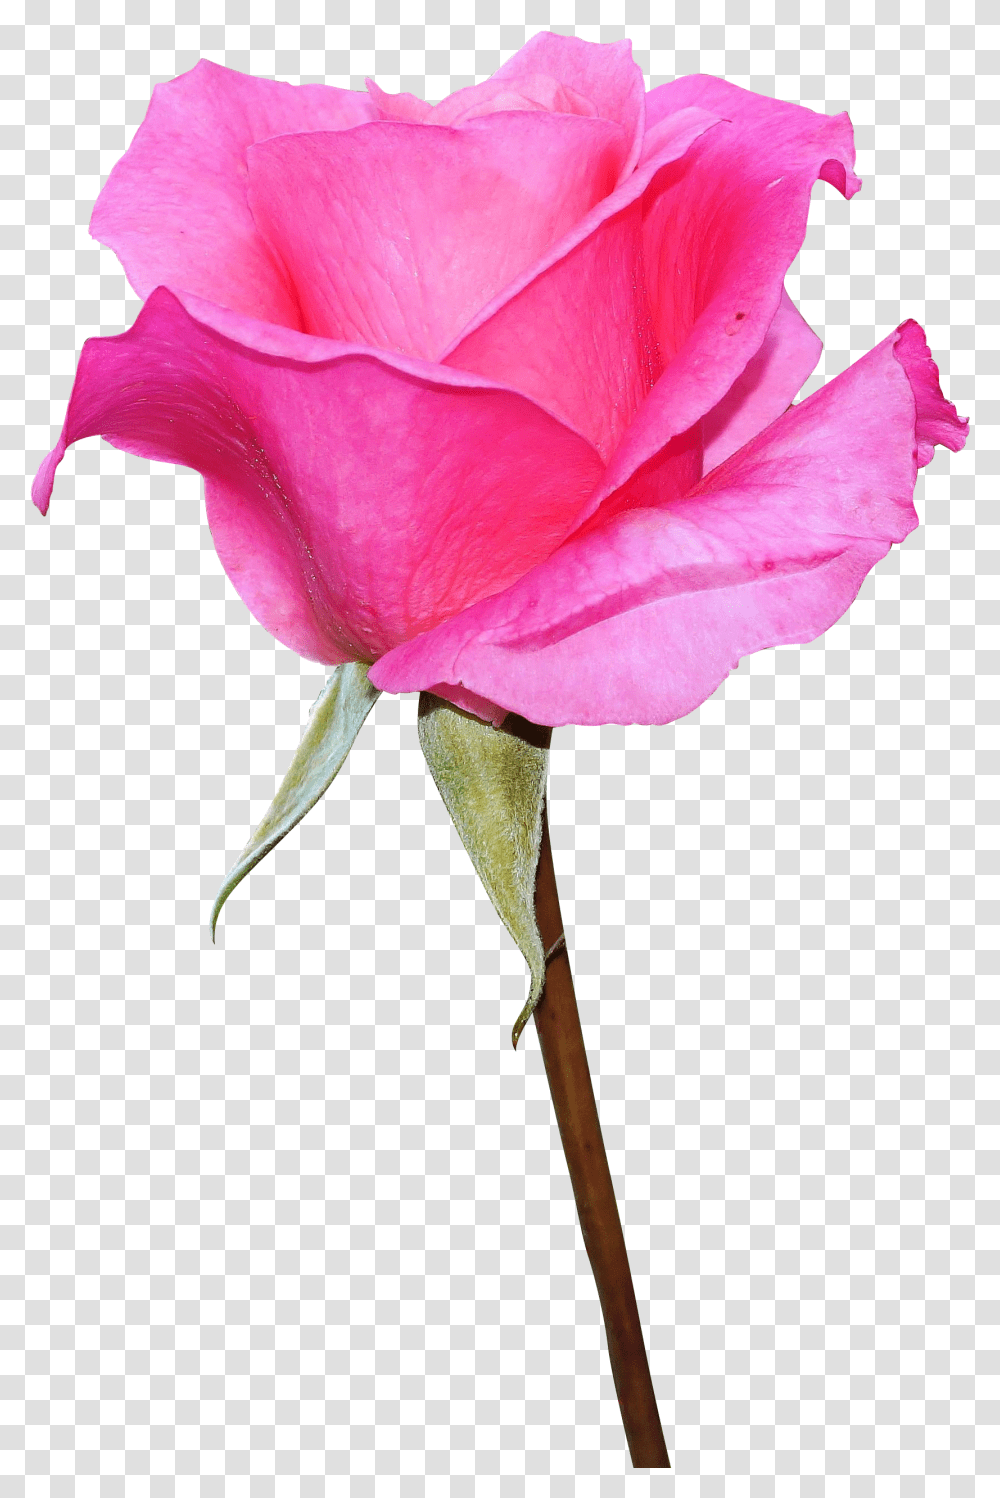 Pink Rose Image Download, Flower, Plant, Blossom, Petal Transparent Png